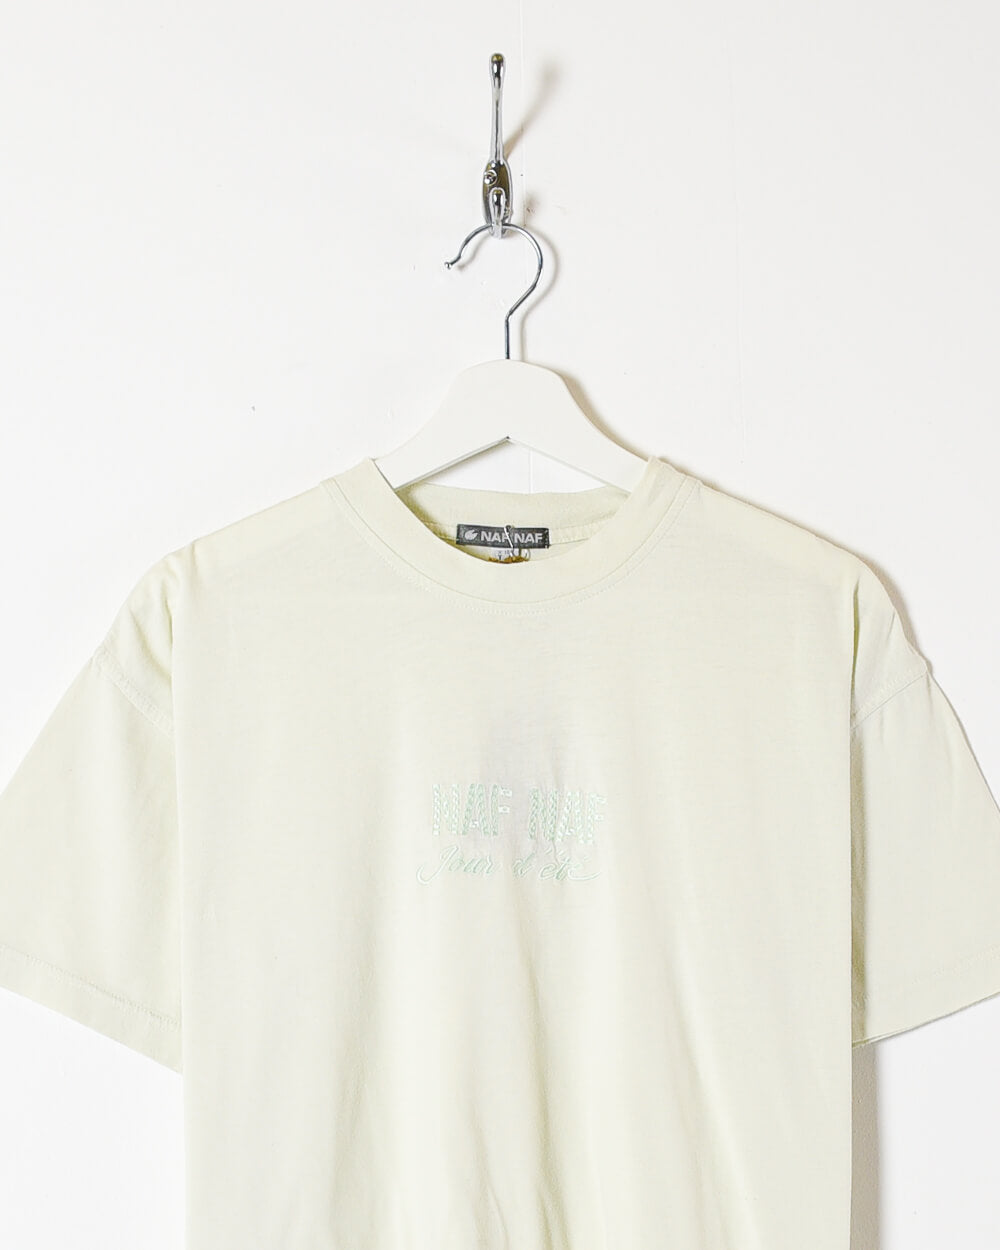 Neutral Naf Naf T-Shirt - Medium